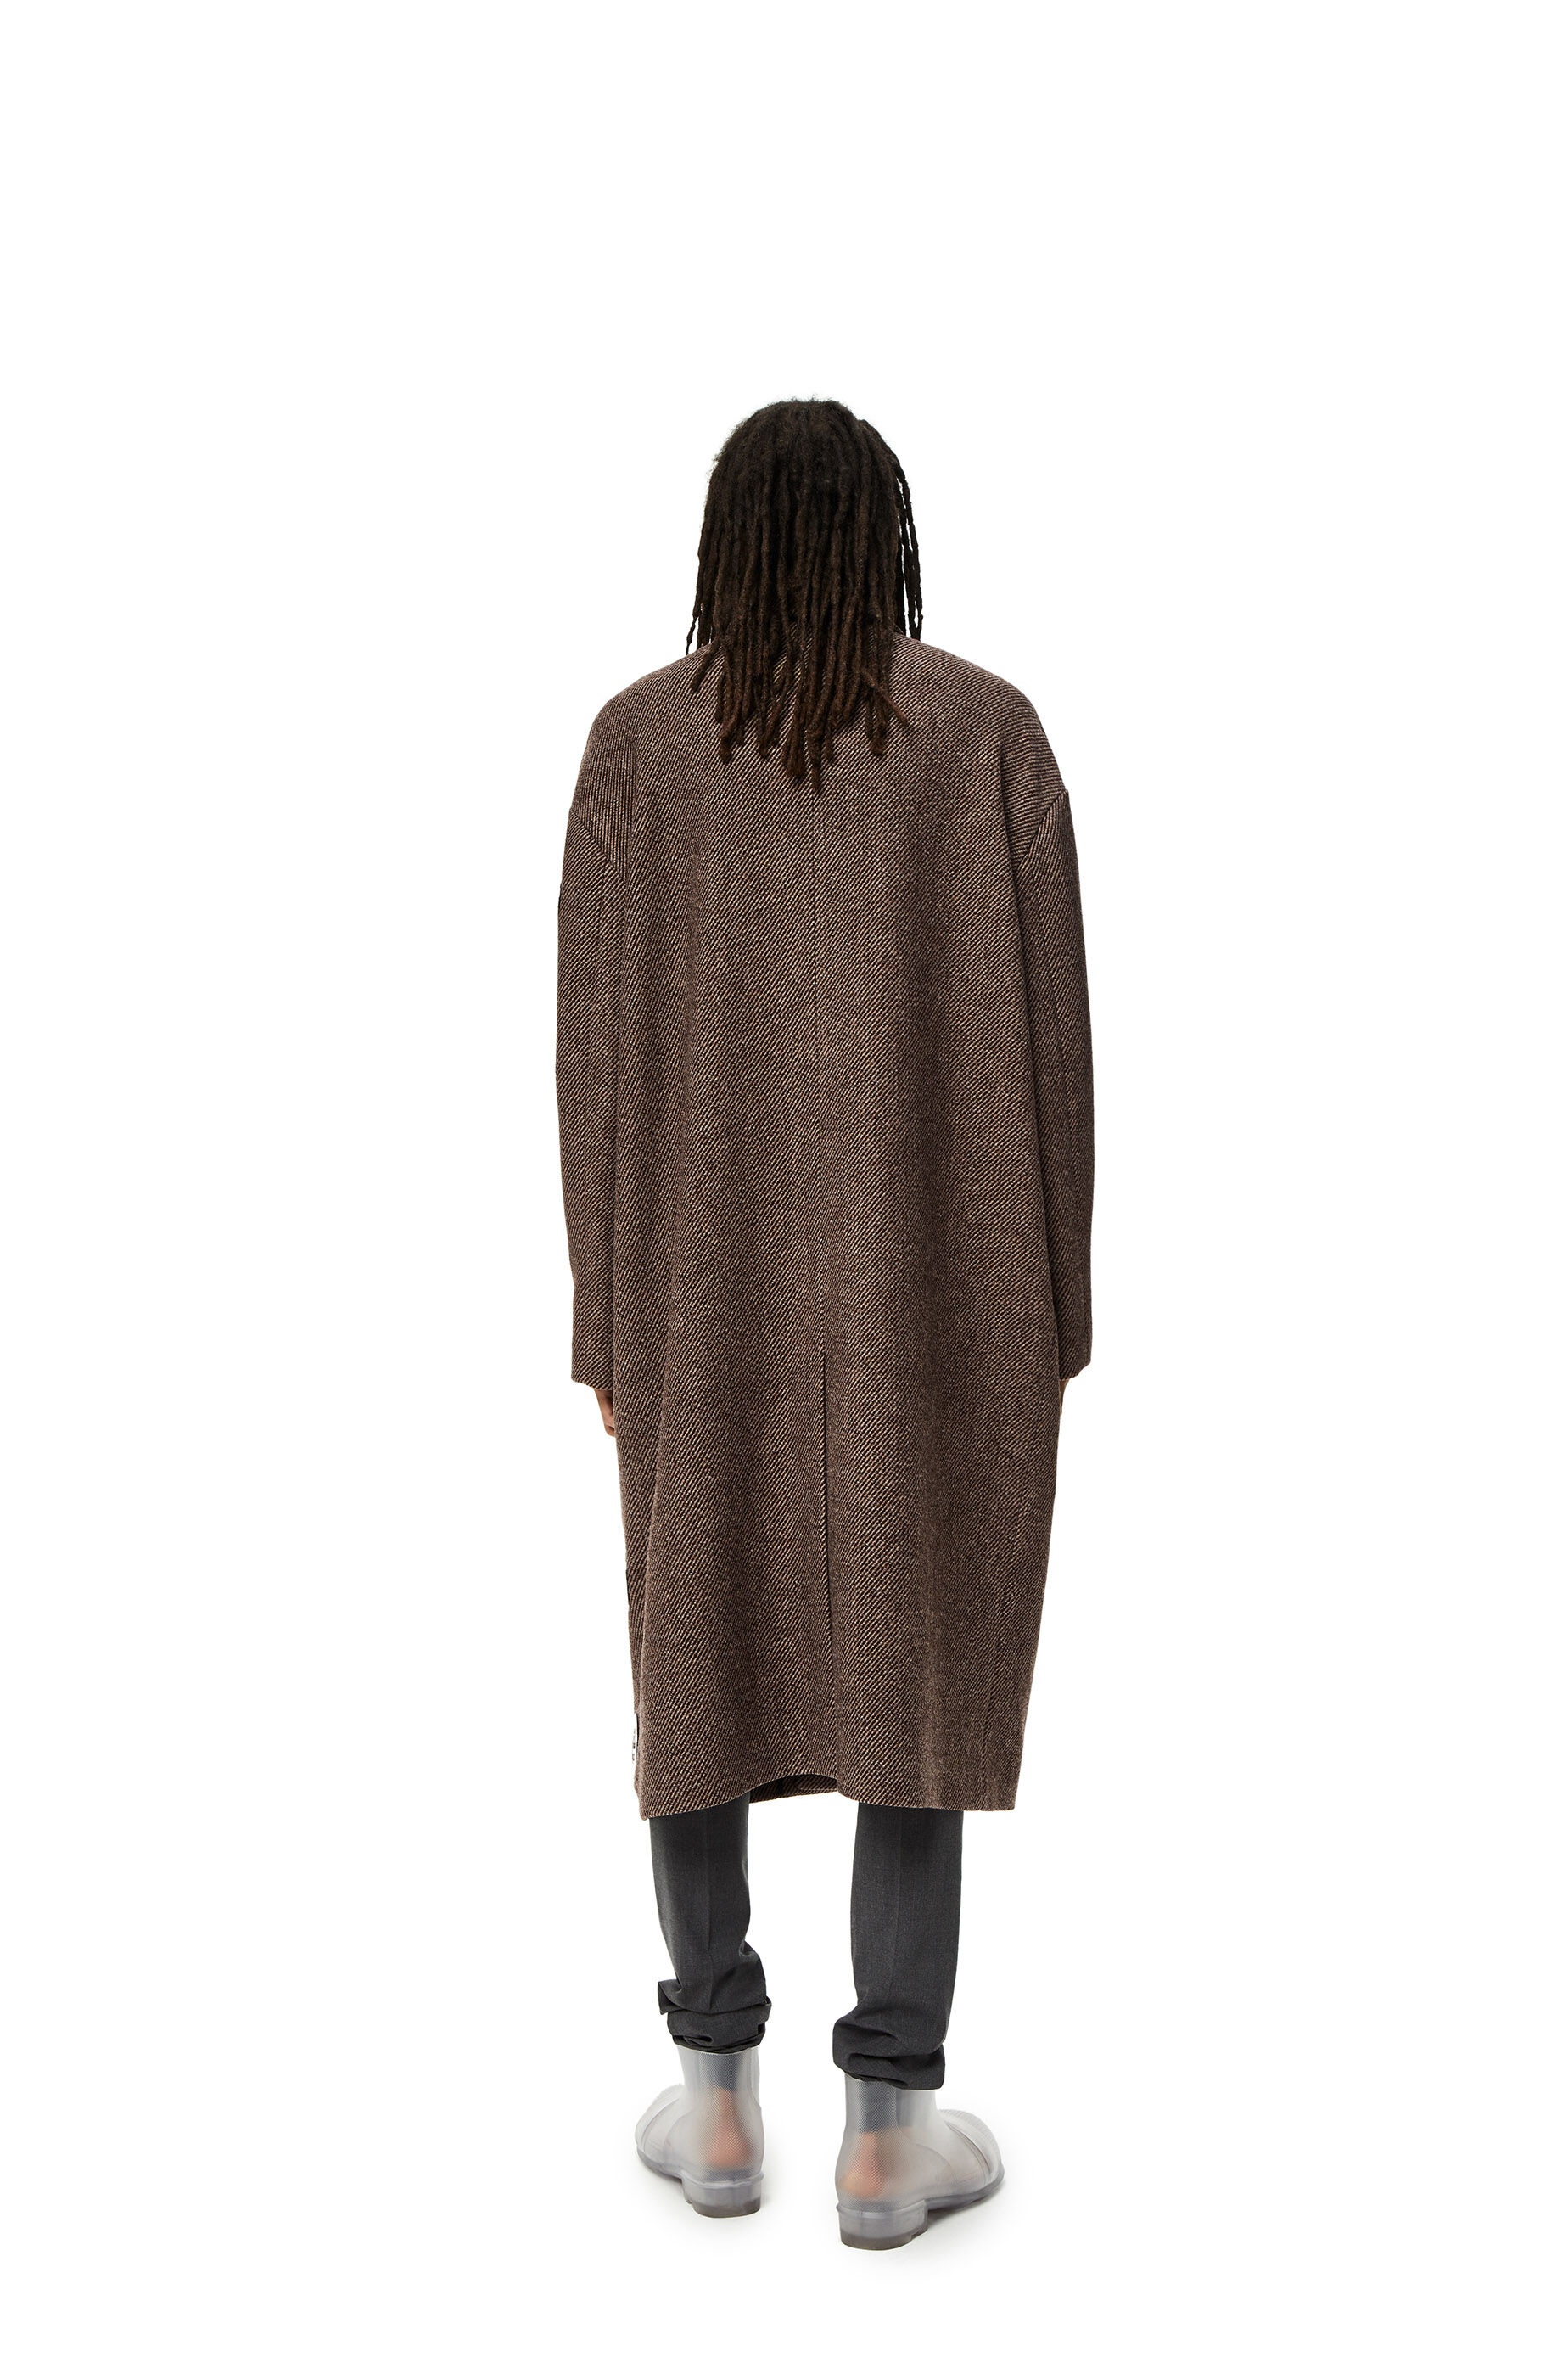 Sinkhole embellished coat in wool - 3